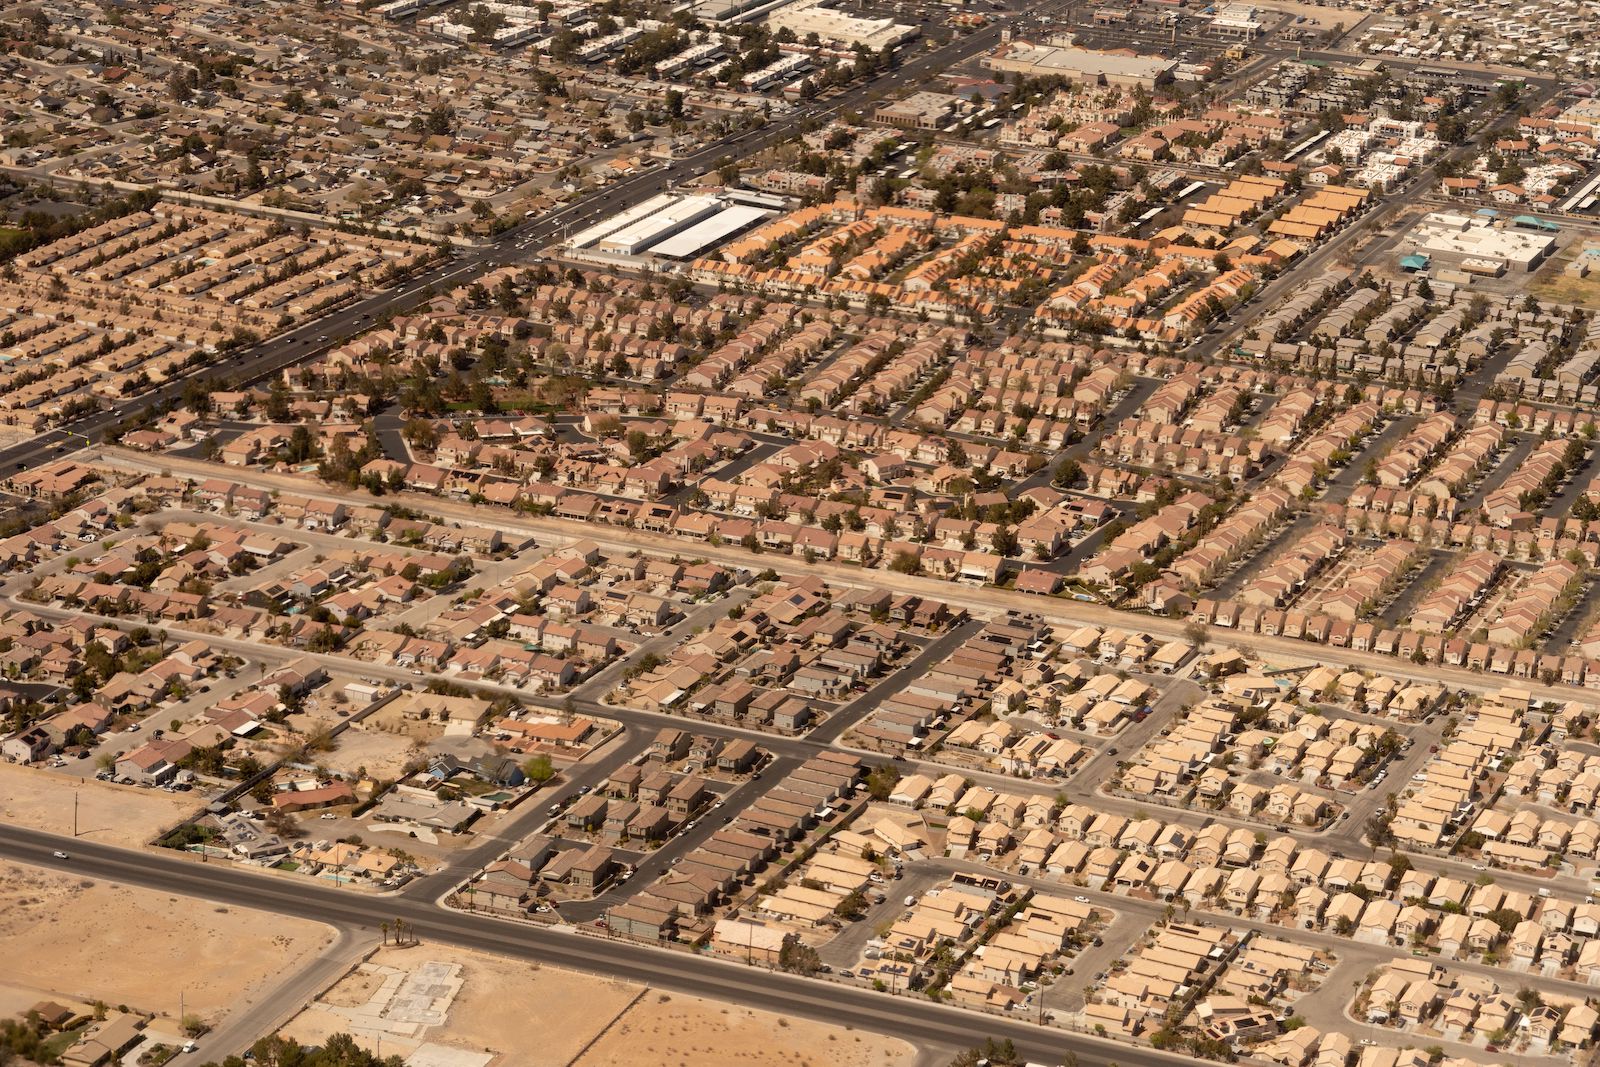 Aerial view of urban sprawl, Las Vegas, Nevada